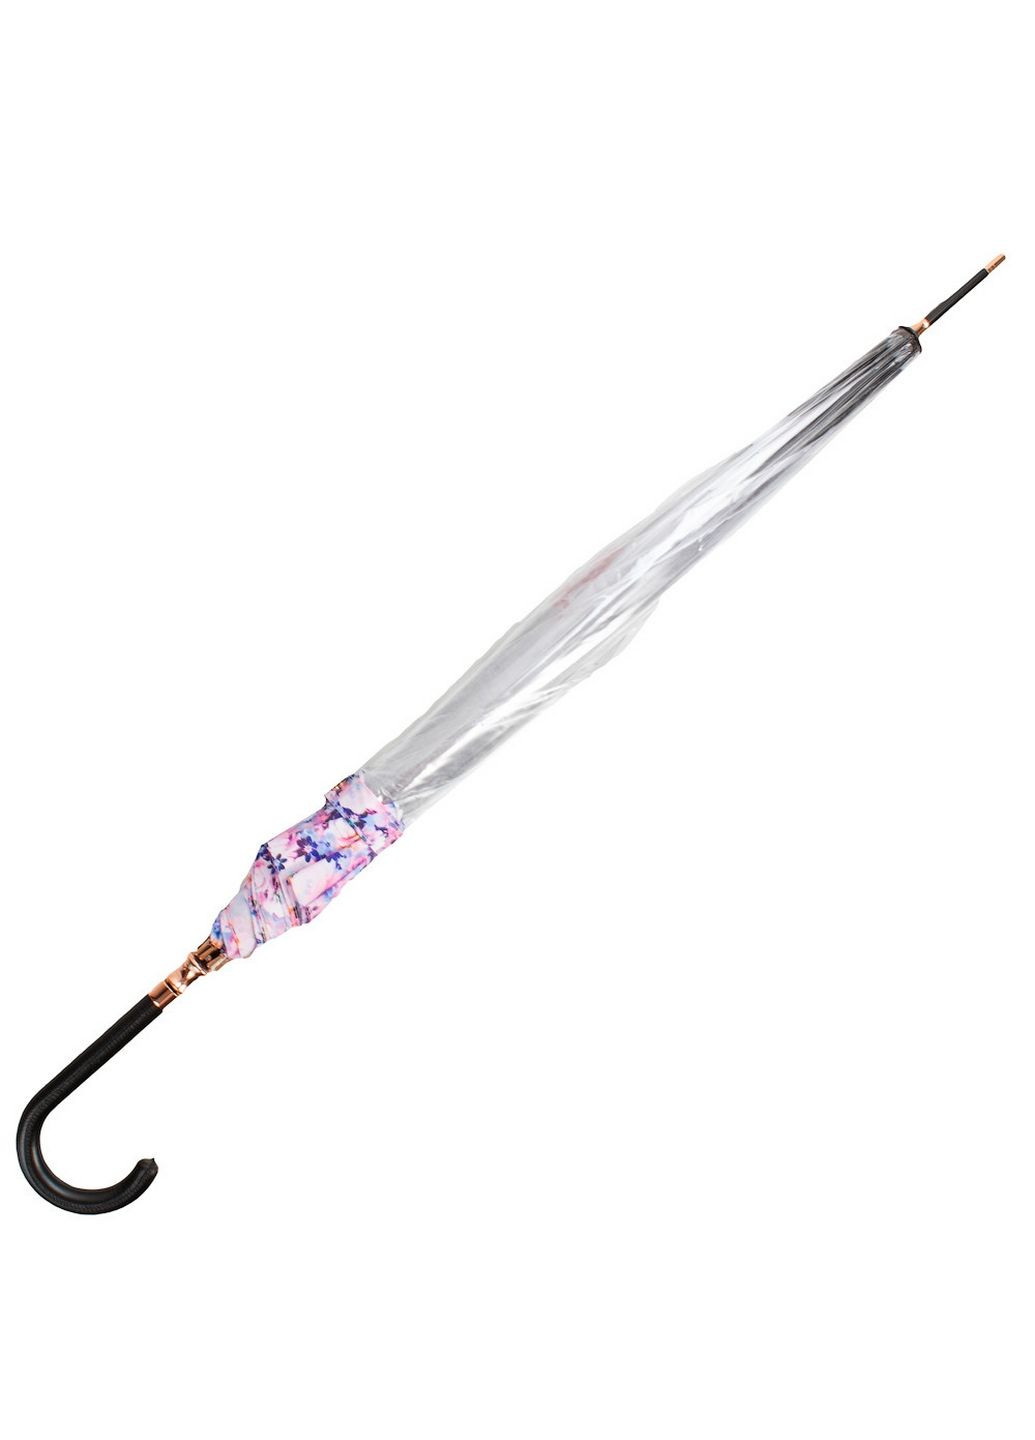 Женский зонт-трость механический Fulton (282594414)